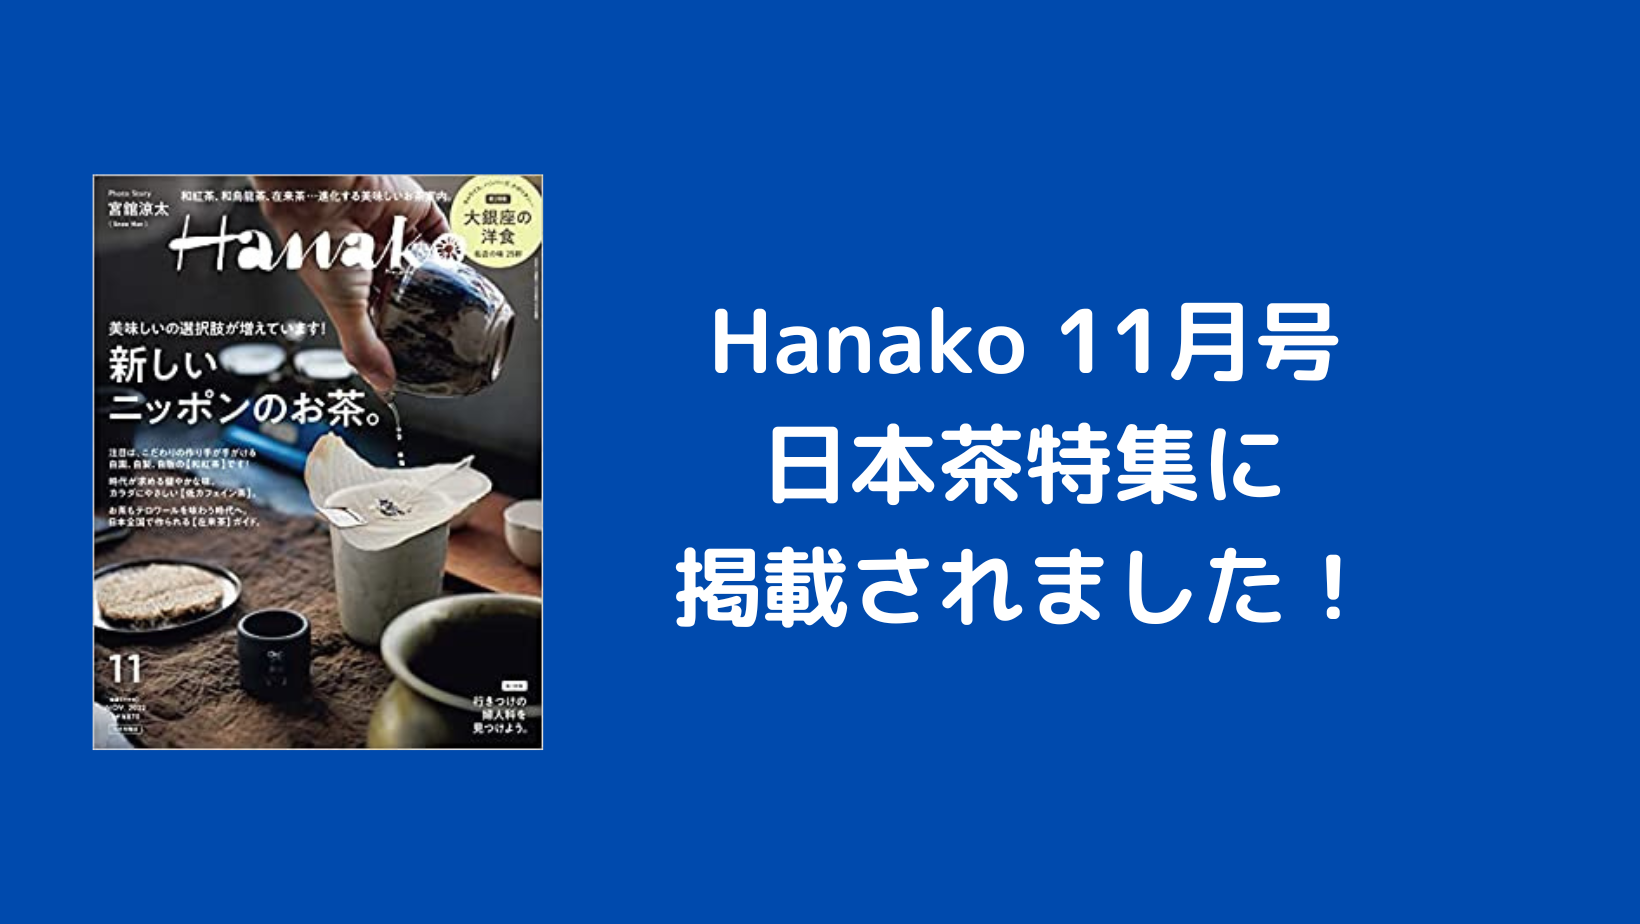 9/28発売 Hanako11月号に掲載されました！